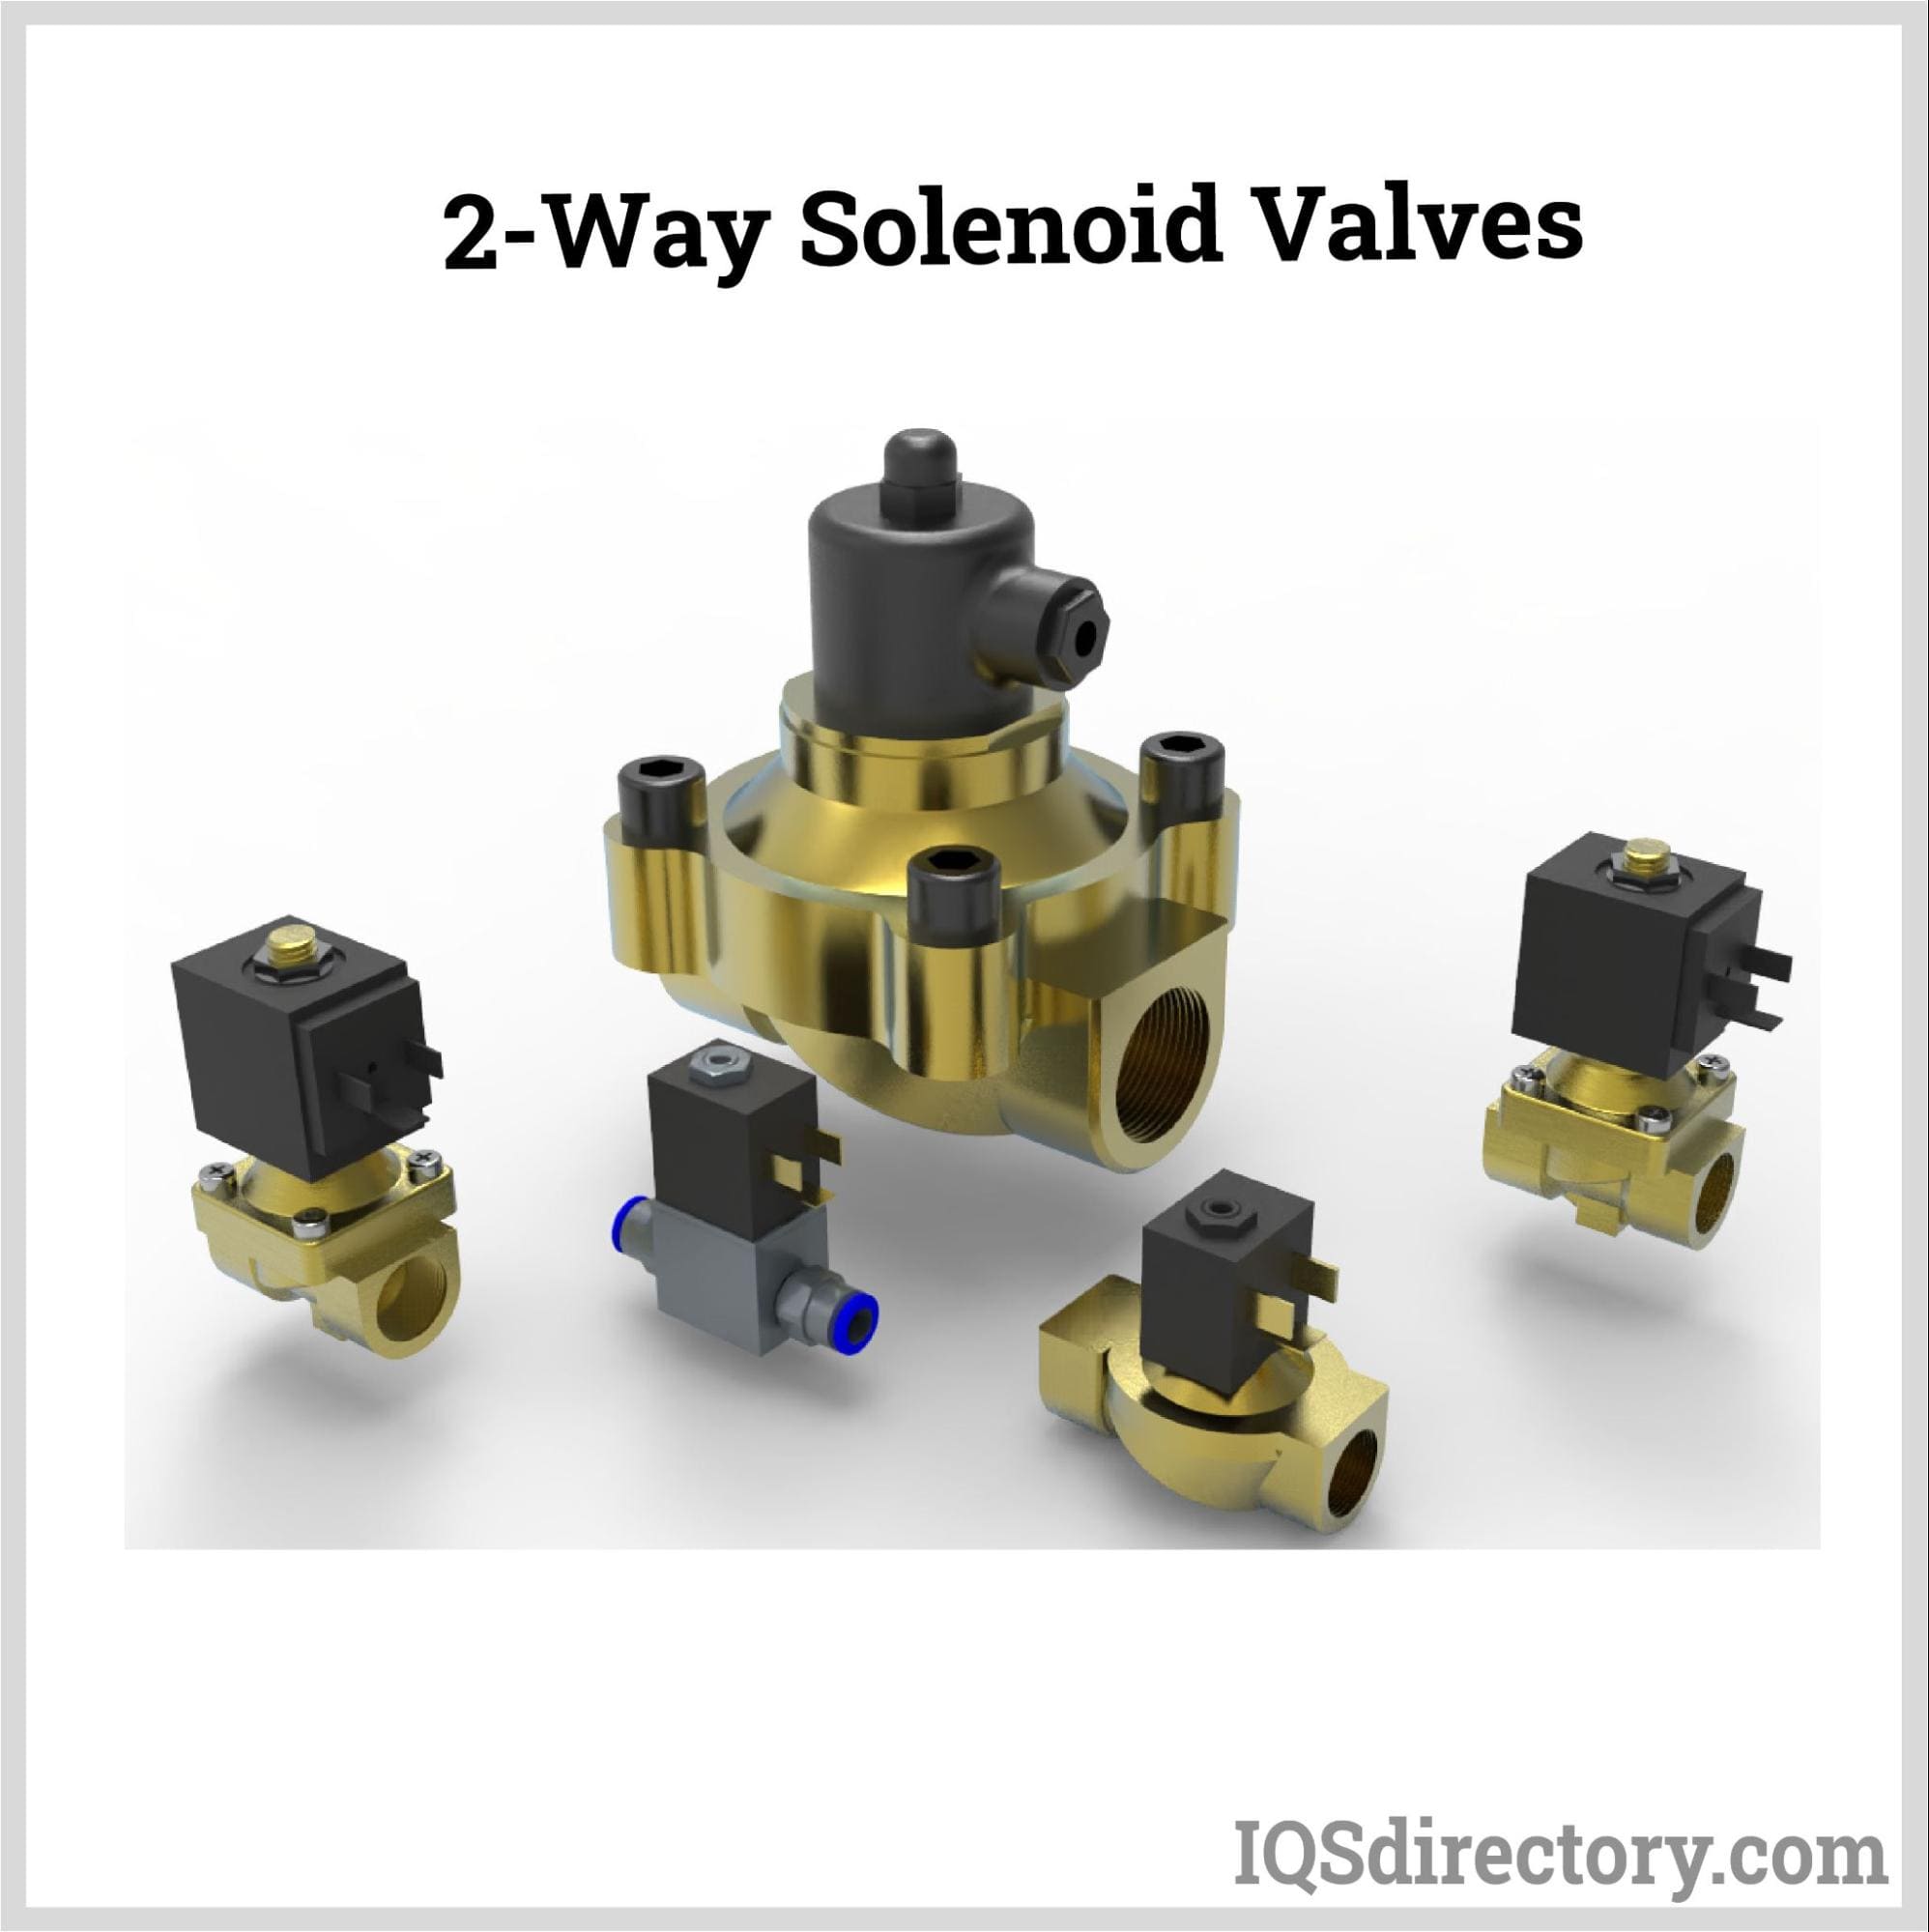 2-Way Solenoid Valves